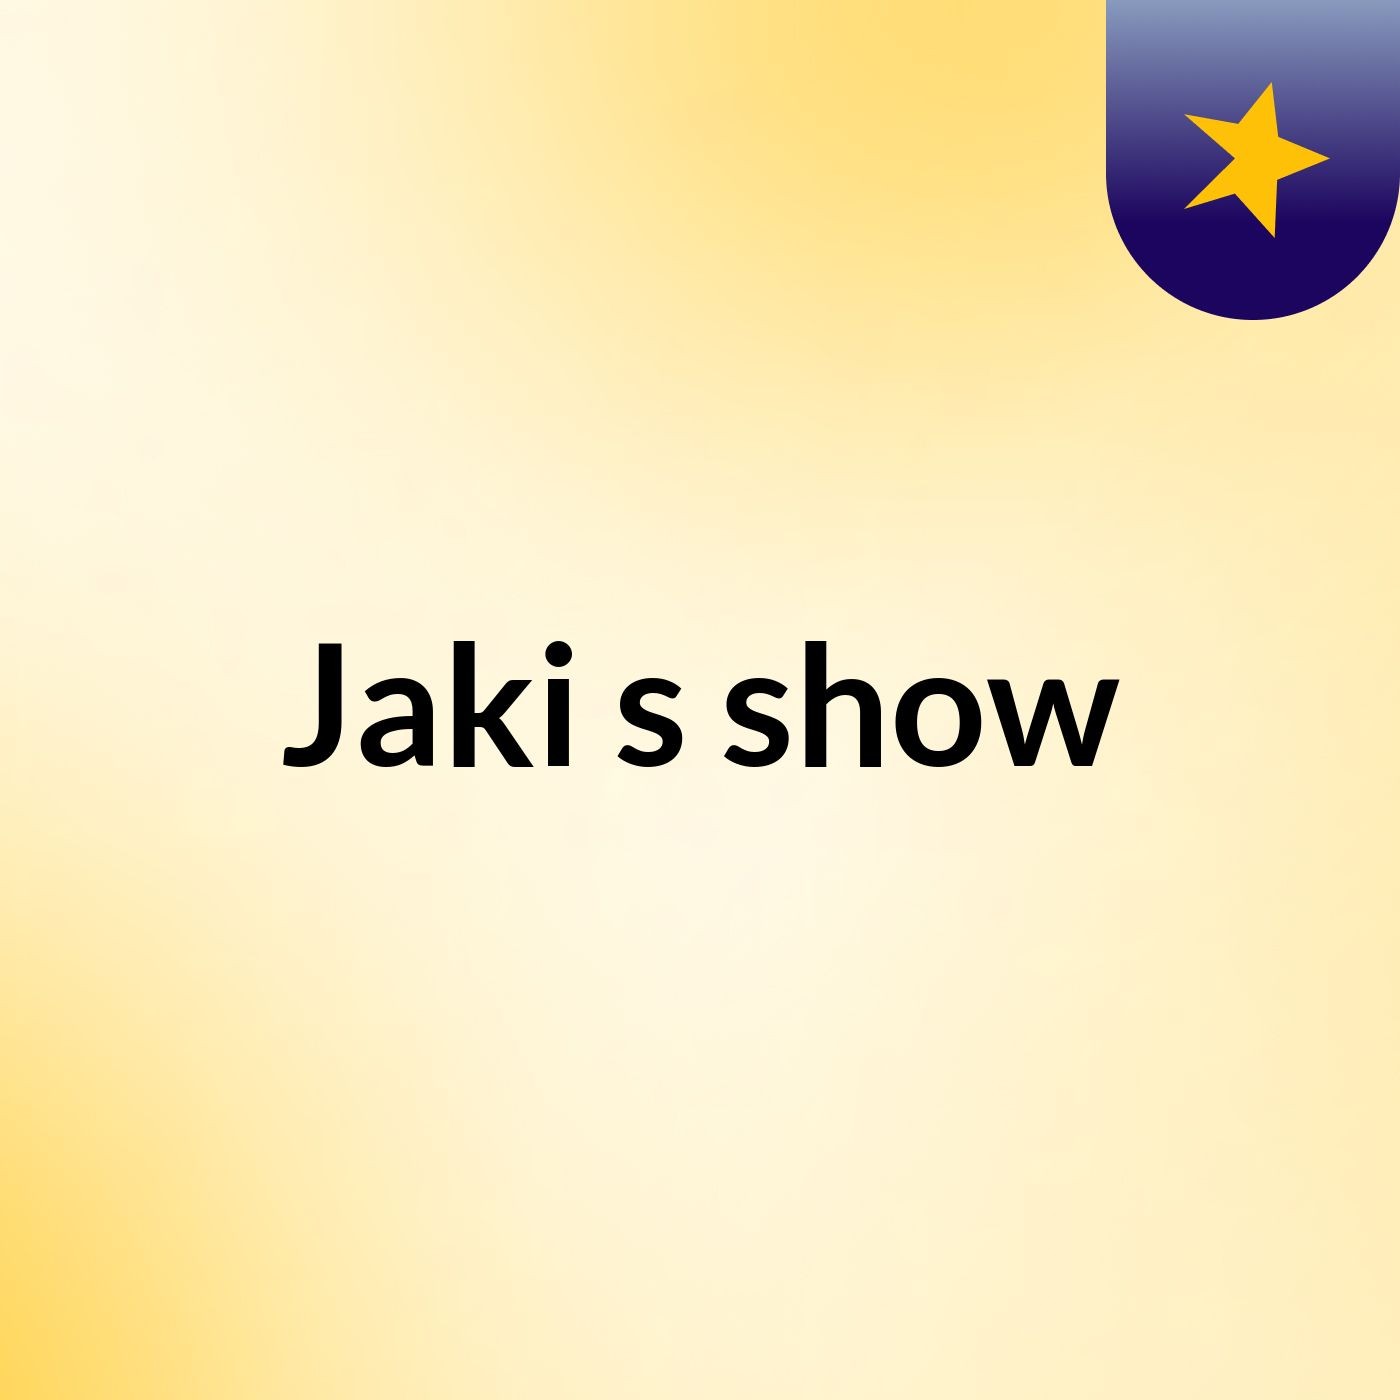 Jaki's show